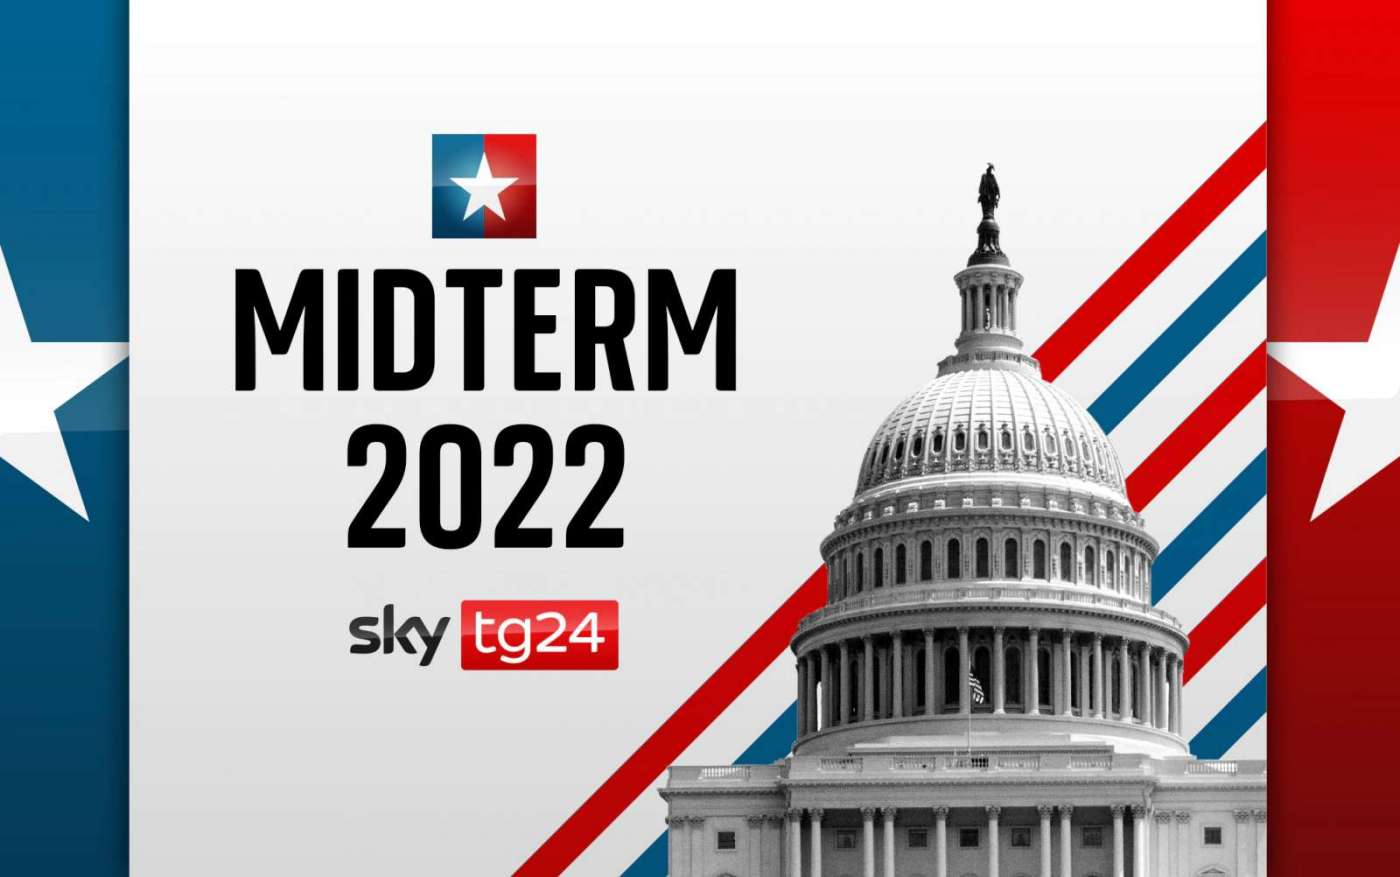 SkyTG24 speciale Midterm 2022, una maratona per seguire le elezioni americane 